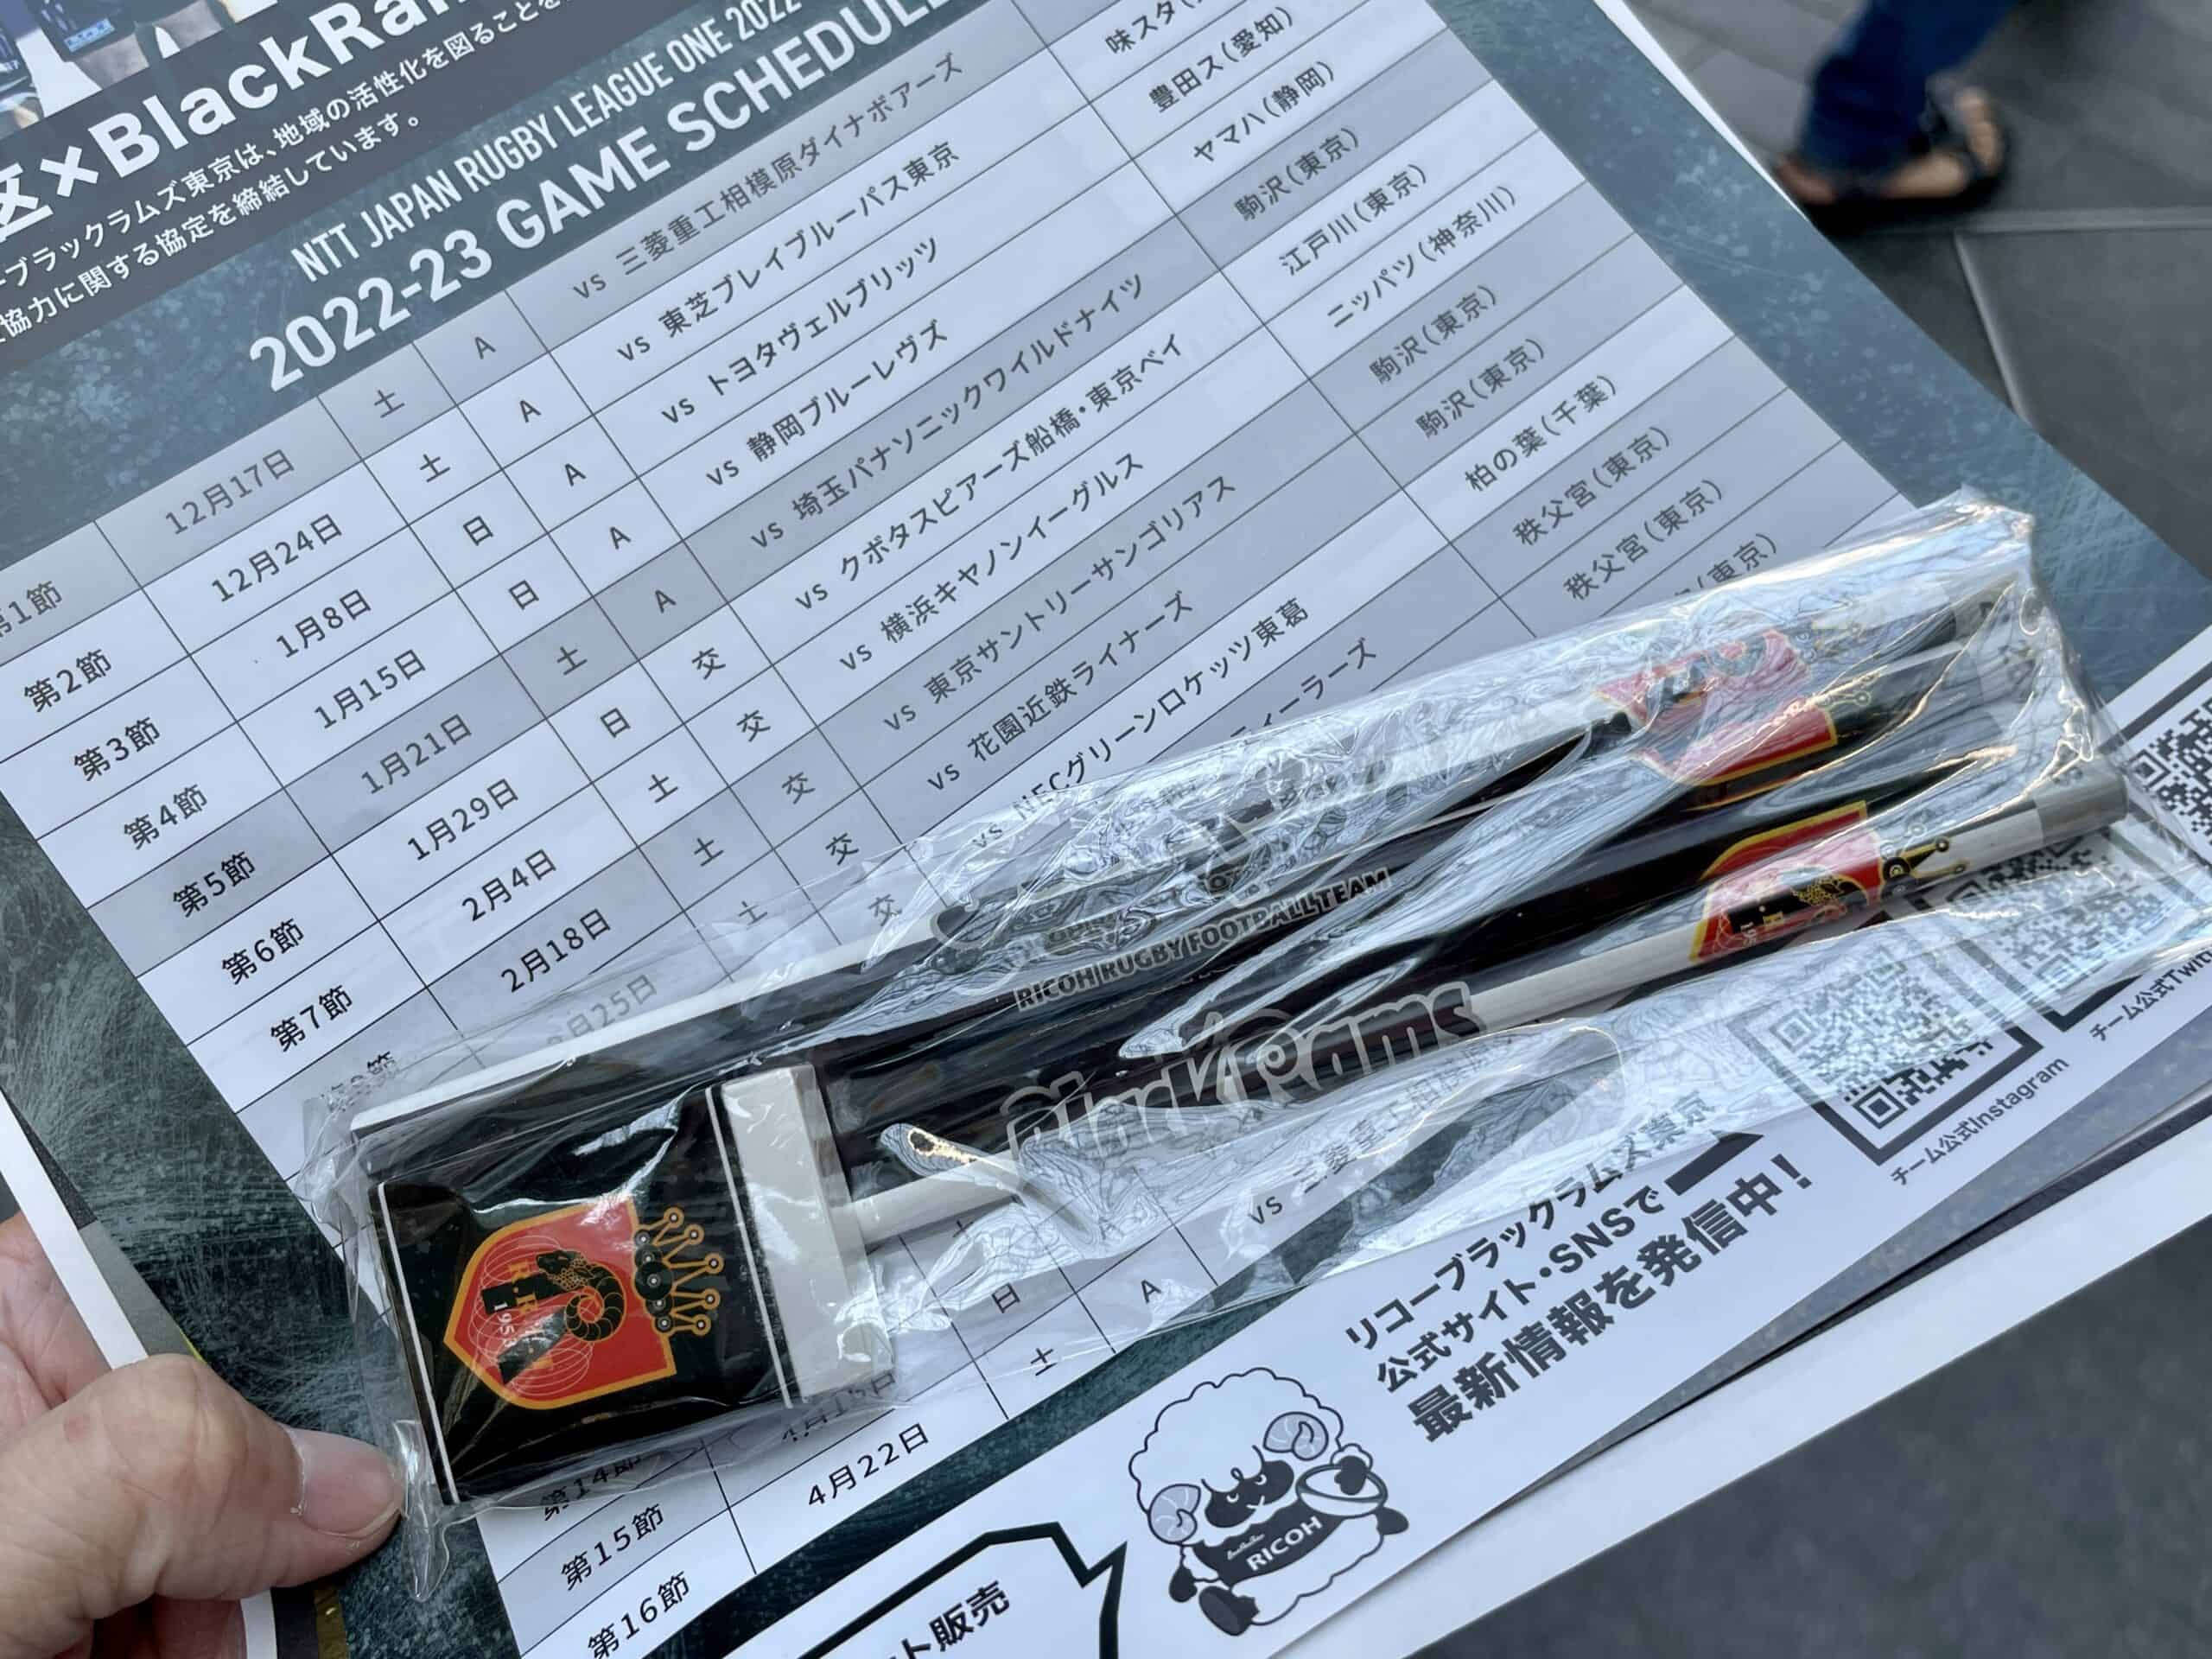 ブラックラムズ東京 オリジナル鉛筆、消しゴムと試合スケジュール